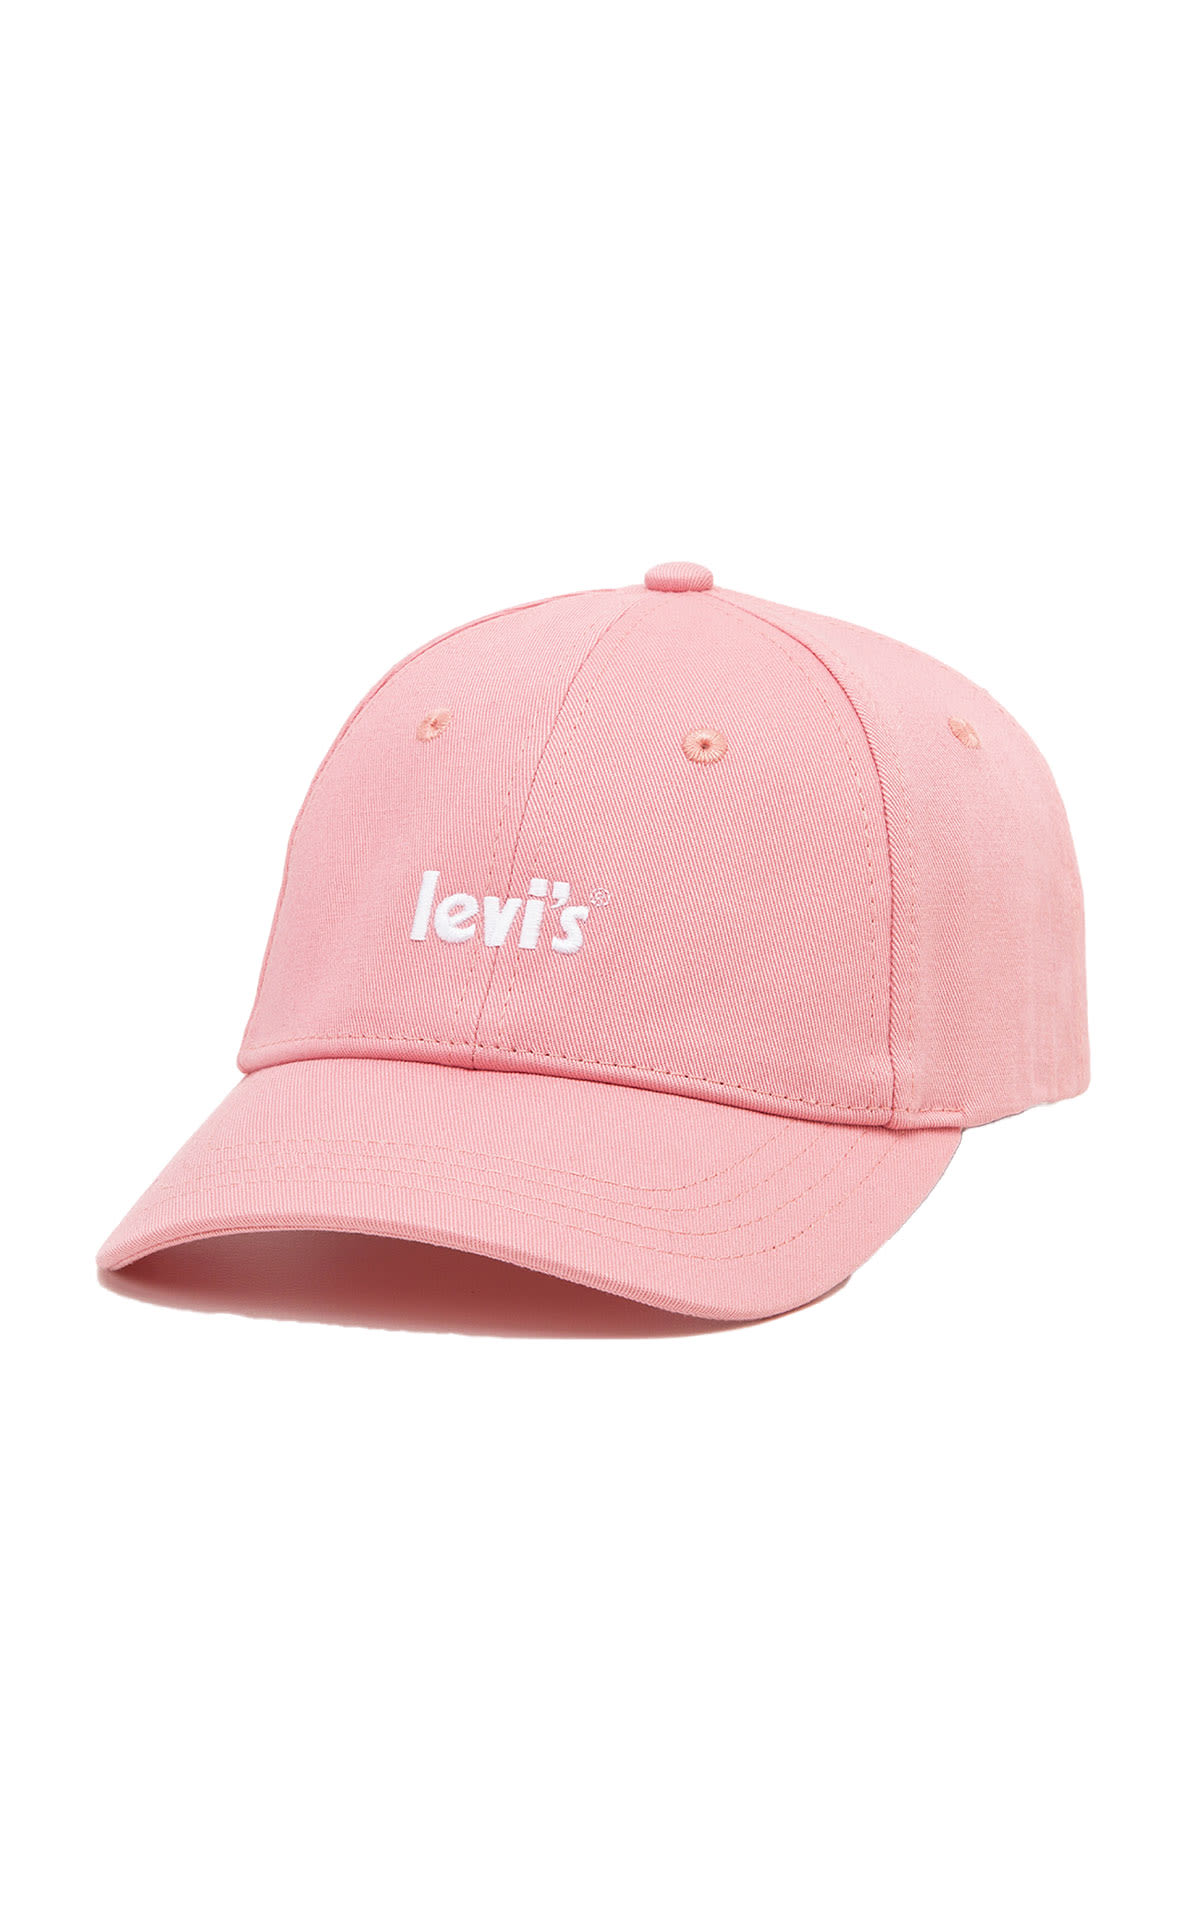 Gorra rosa levis